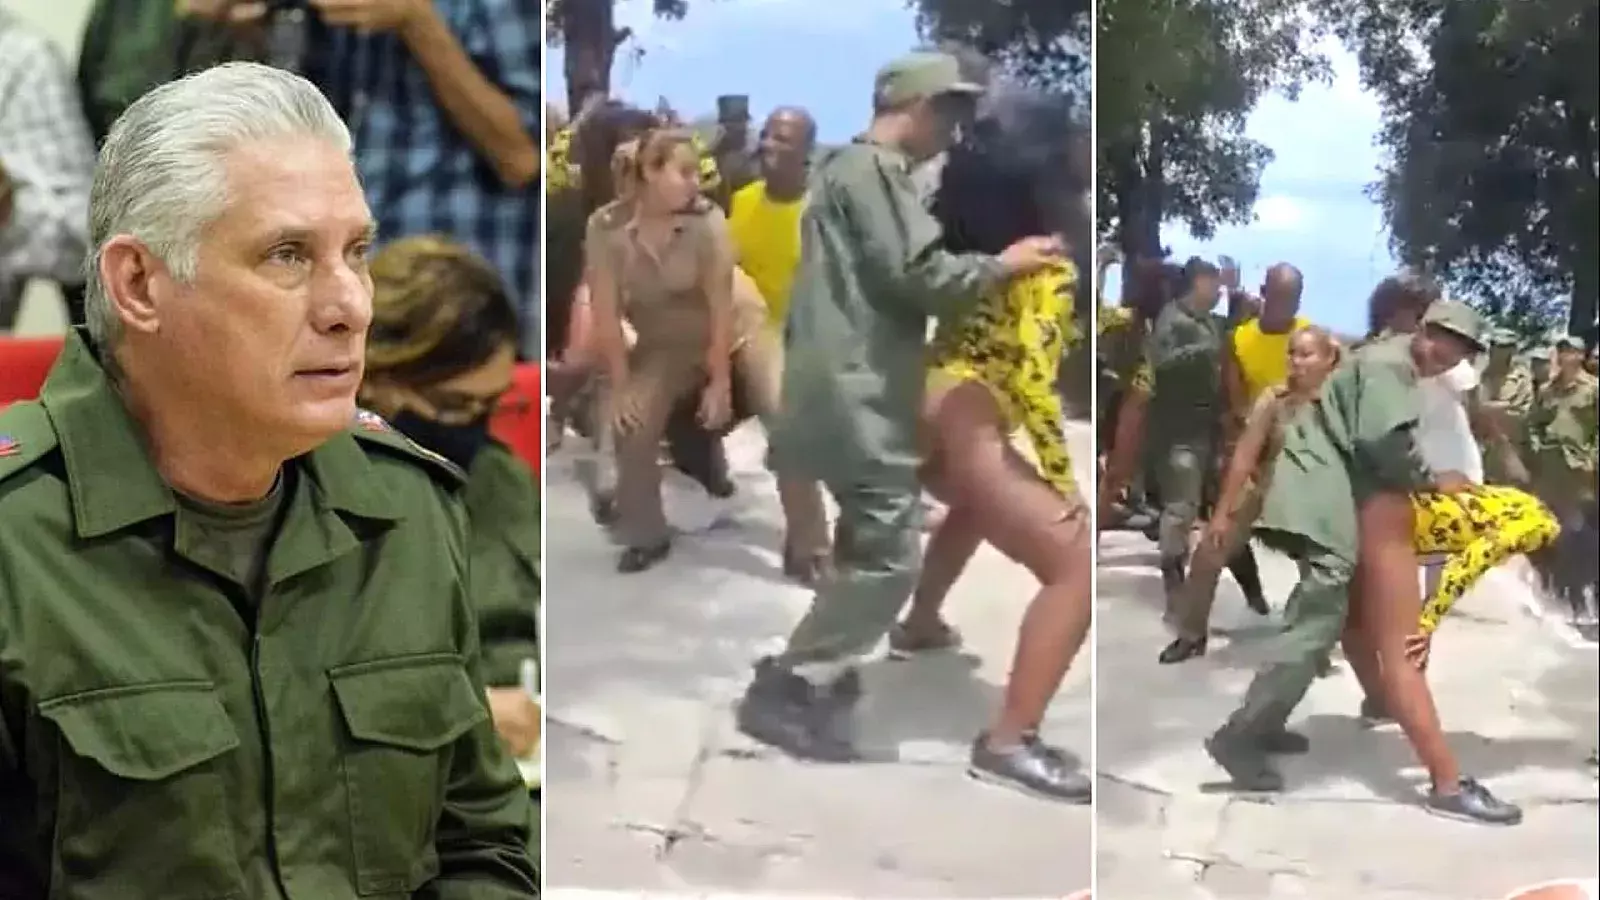 Díaz Canel y militares bailando reguetón